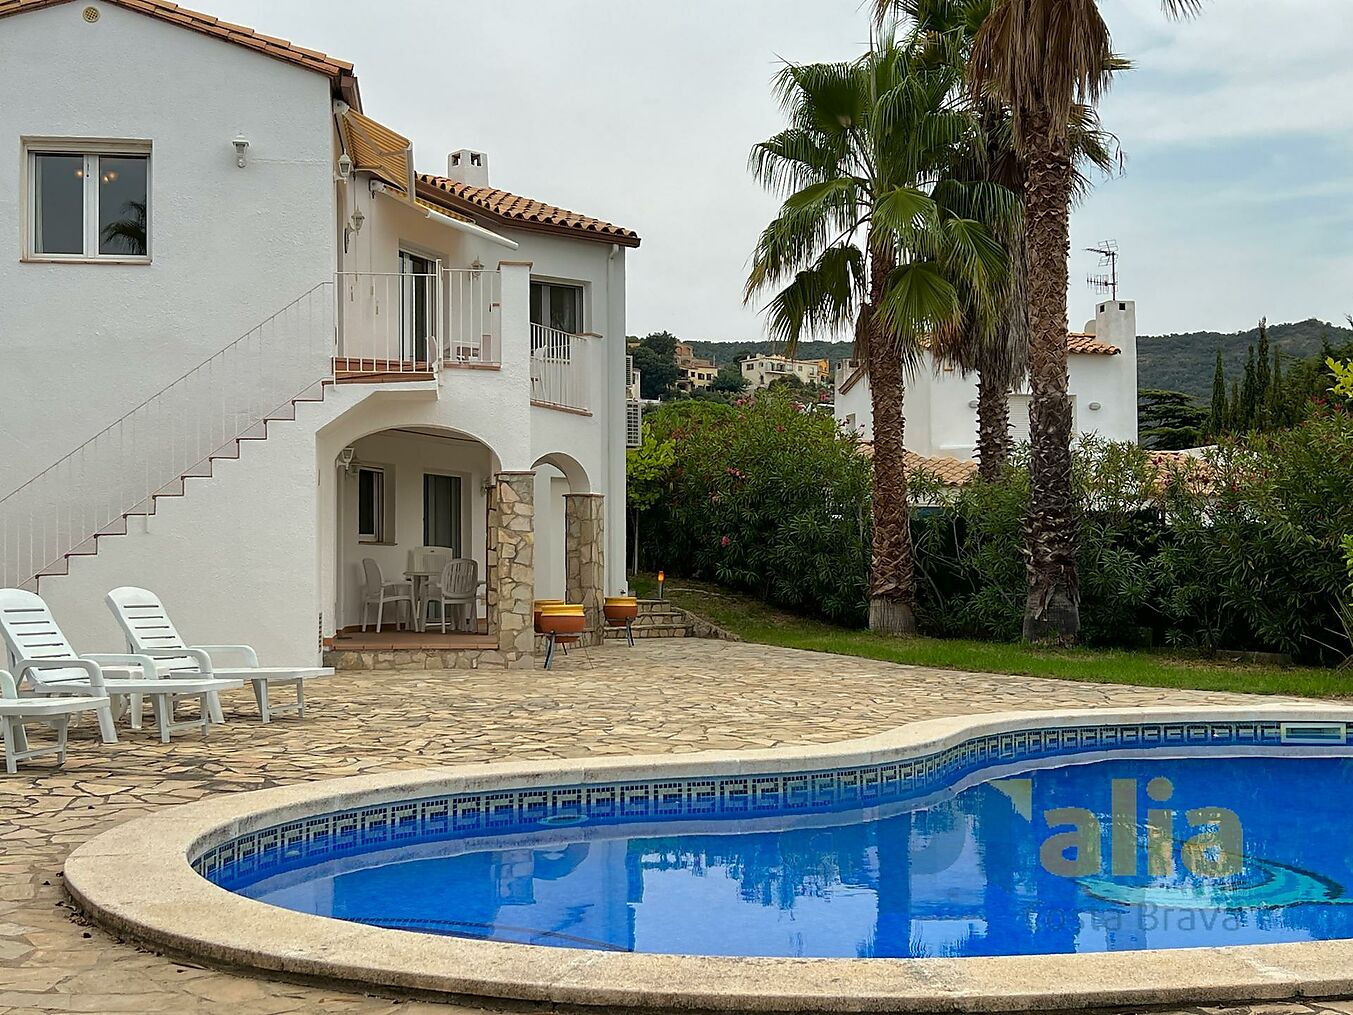 Casa molt lluminosa amb piscina i gran jardí